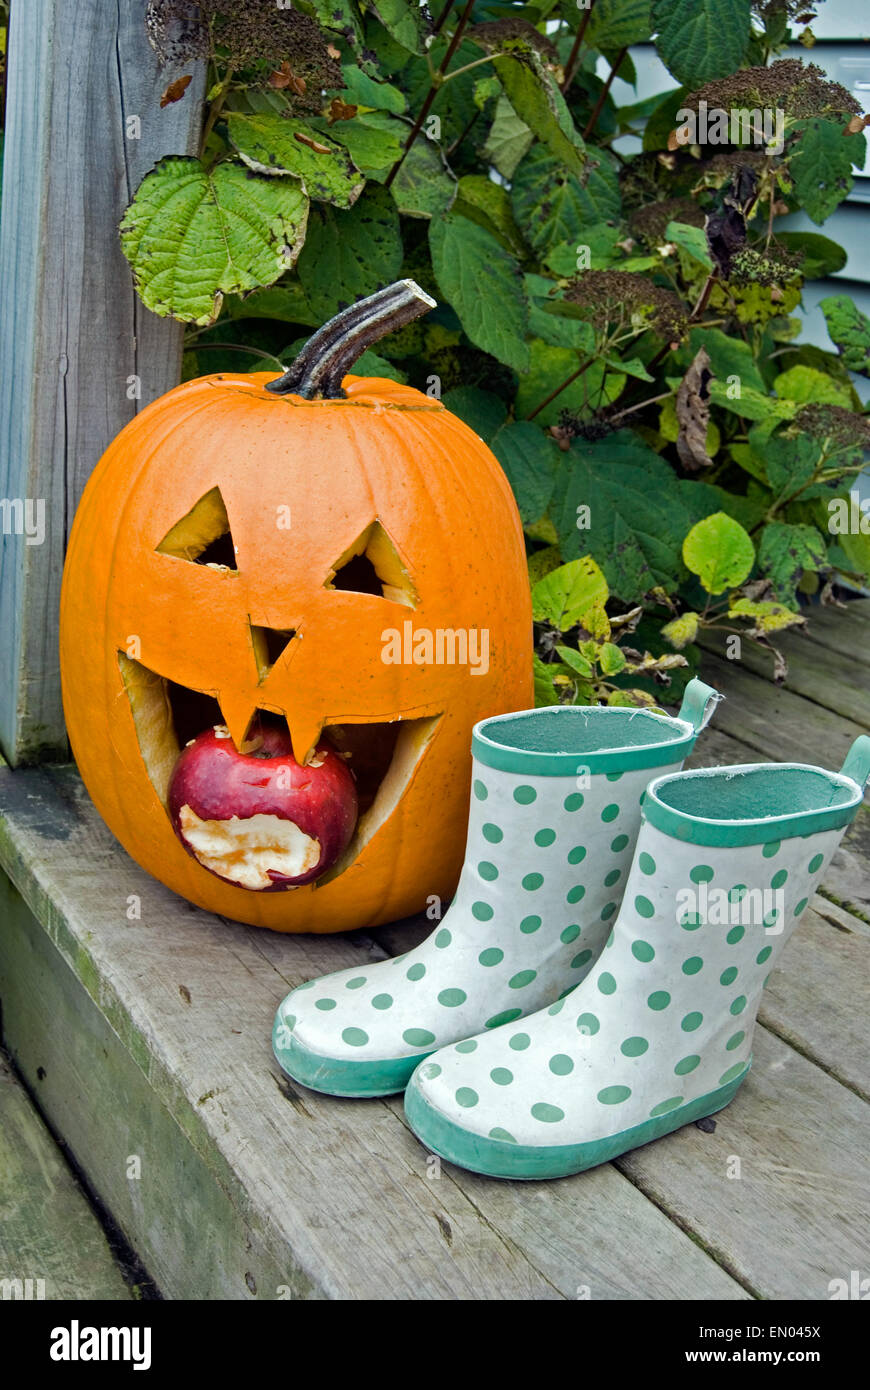 Fauler Apfel in einen Halloween-Kürbis Mund und grün Polka Dot Stiefel auf hölzernen Schritt. Stockfoto